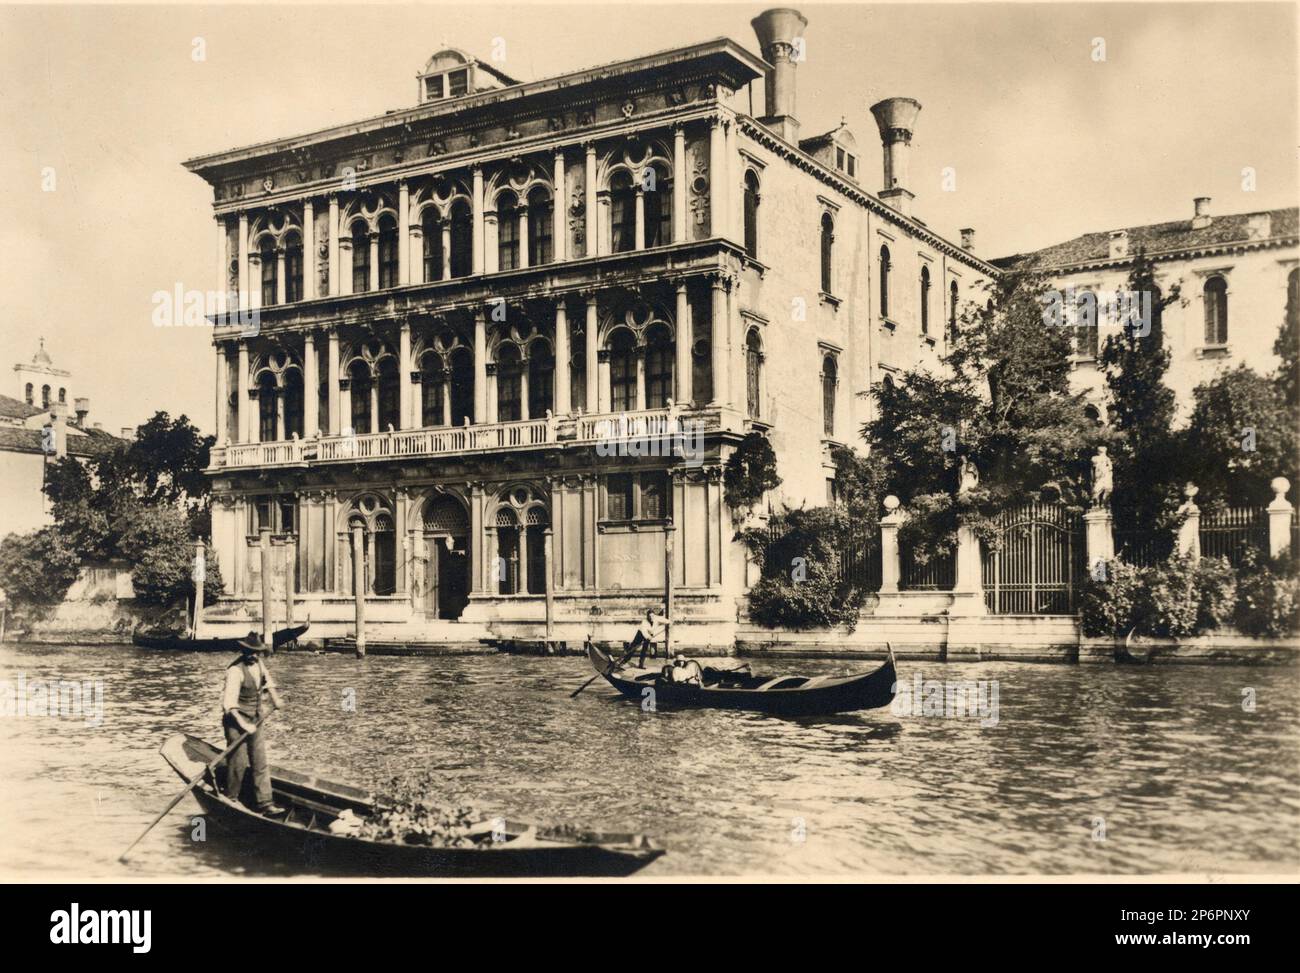 1880 ca ,Venise, Italie : Palazzo VENDRAMIN CALERGI sur le Canal Grande, après appelé Palazzo del DUCA DELLA GRAZIA Lucchesi-Palli. Construit par l'architecte P. Lombardo en 1481 . Buyed by Comte GIUSEPPE VOLPI DI MISURATA aujourd'hui sont les Casinò DELLA Città DI VENEZIA. Dans ce séjour de palais et trouvé mort le célèbre compositeur de musique d'Opéra RICHARD WAGNER ( 1813 - 1883 ) , dans cette maison a écrit la composition ' Parsifal '( 1882 ) . Aujourd'hui, le palais est le Casinò DI VENEZIA - VENEZIA - ITALIA - GEOGRAPHY - GEOGRAFIA - FOTO STORICHE - HISTOIRE - HISTORIQUE - ARCHITETURA - ARCHITECTURE - gondole - gondole Banque D'Images